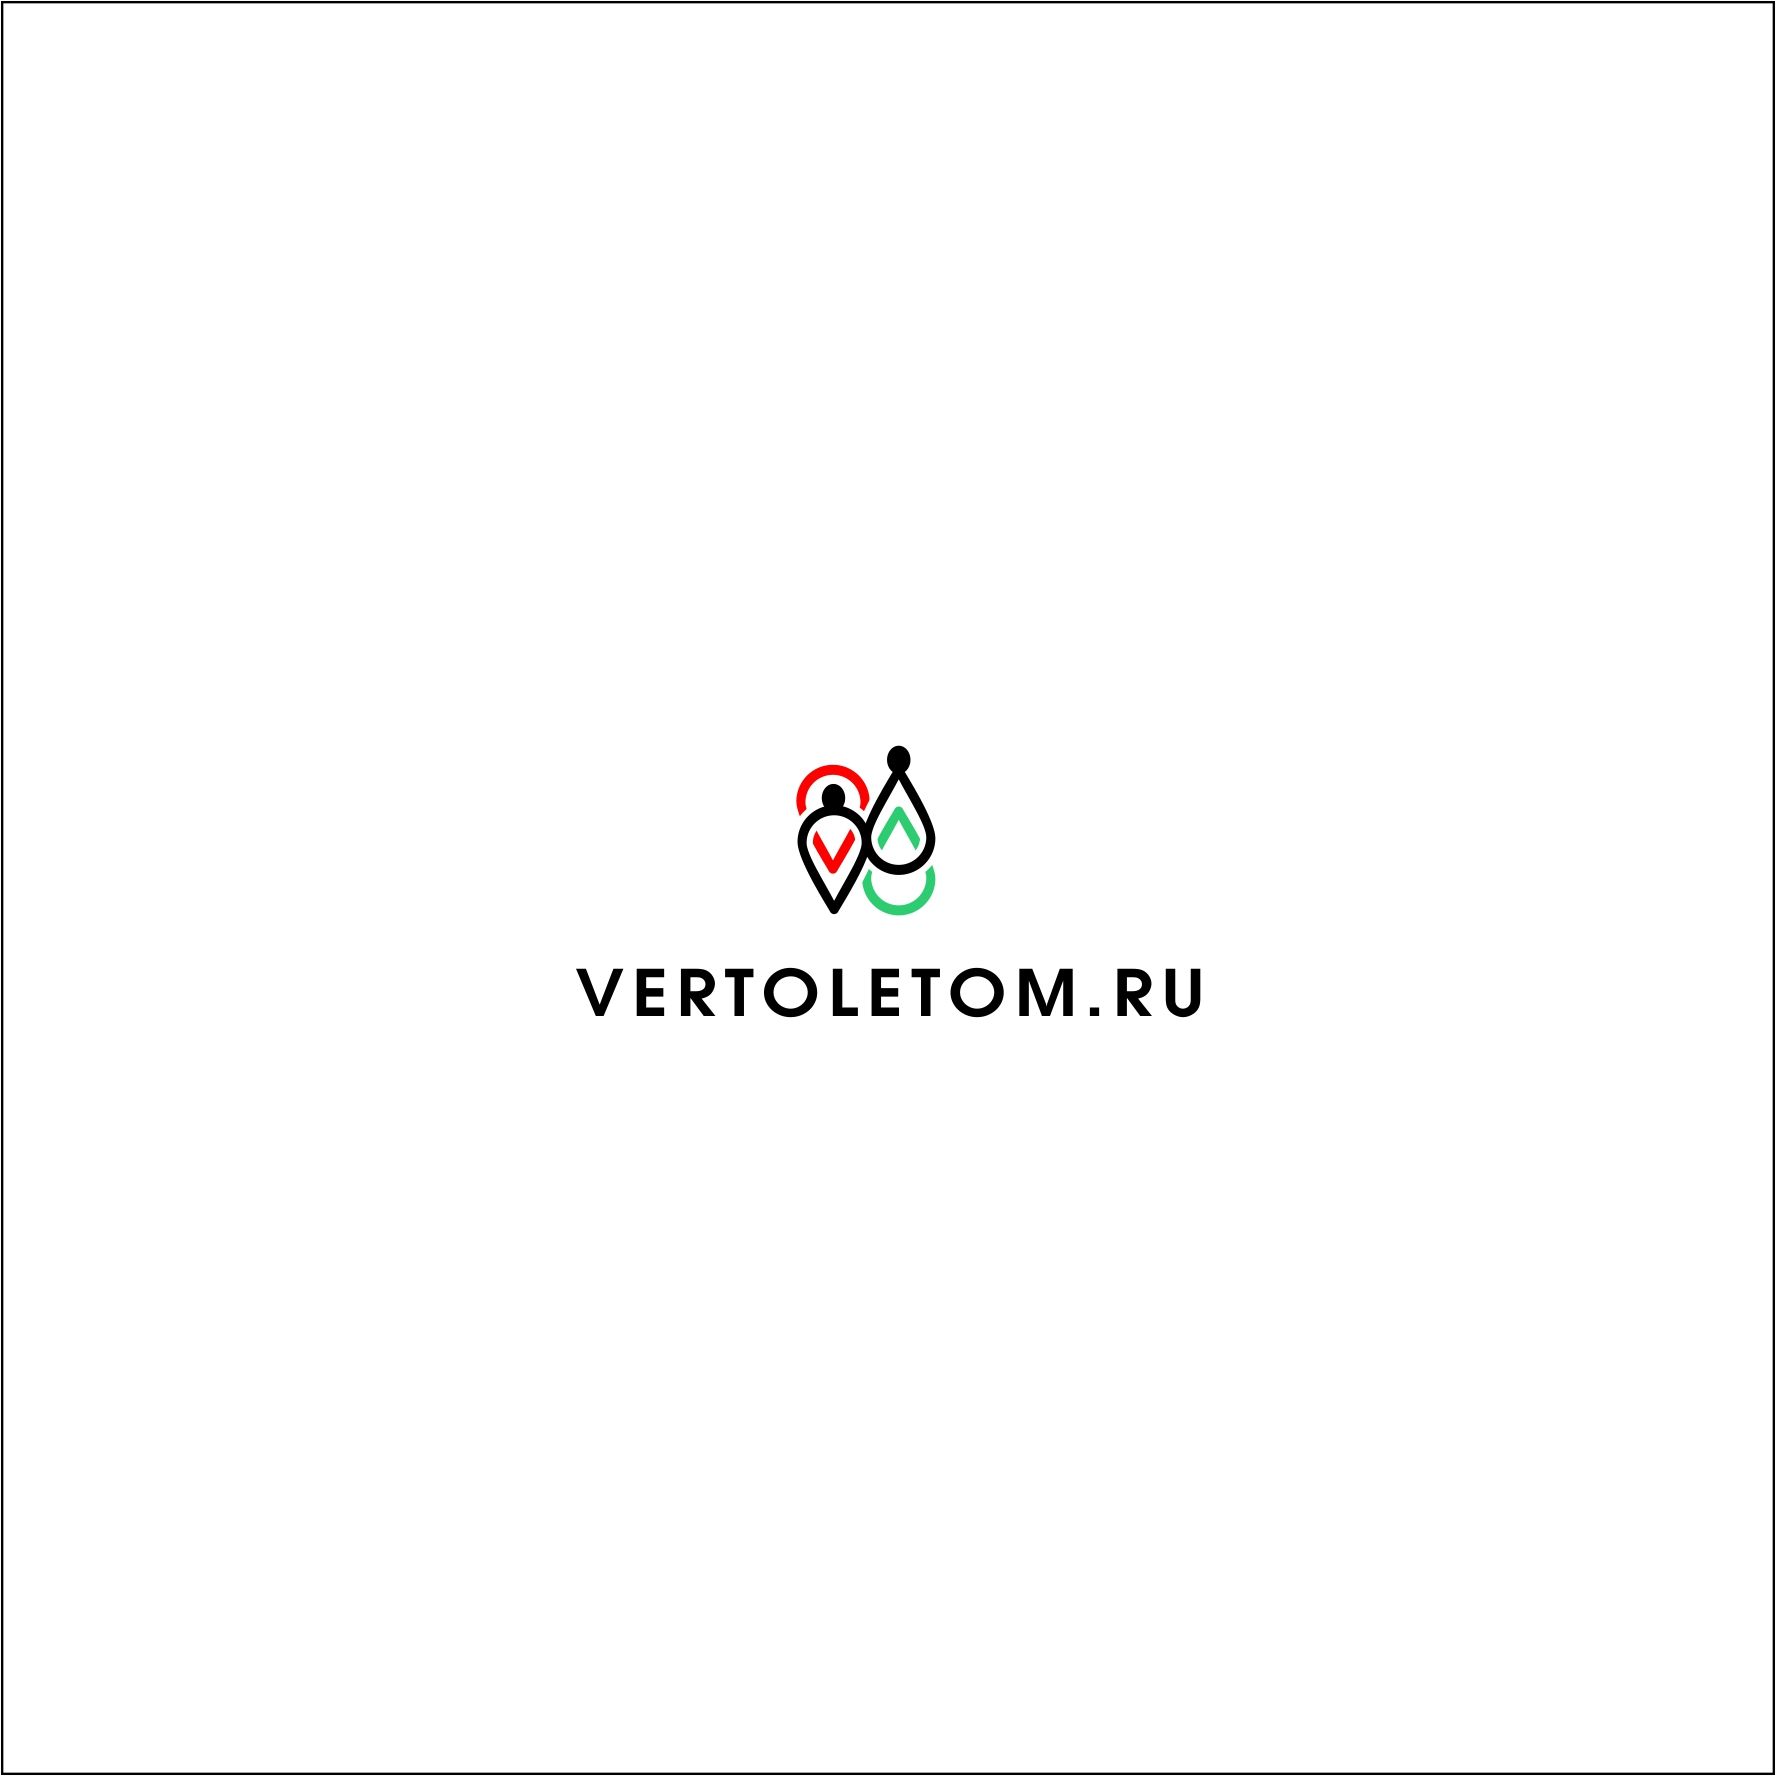 Логотип для vertoletom - дизайнер AlexZab